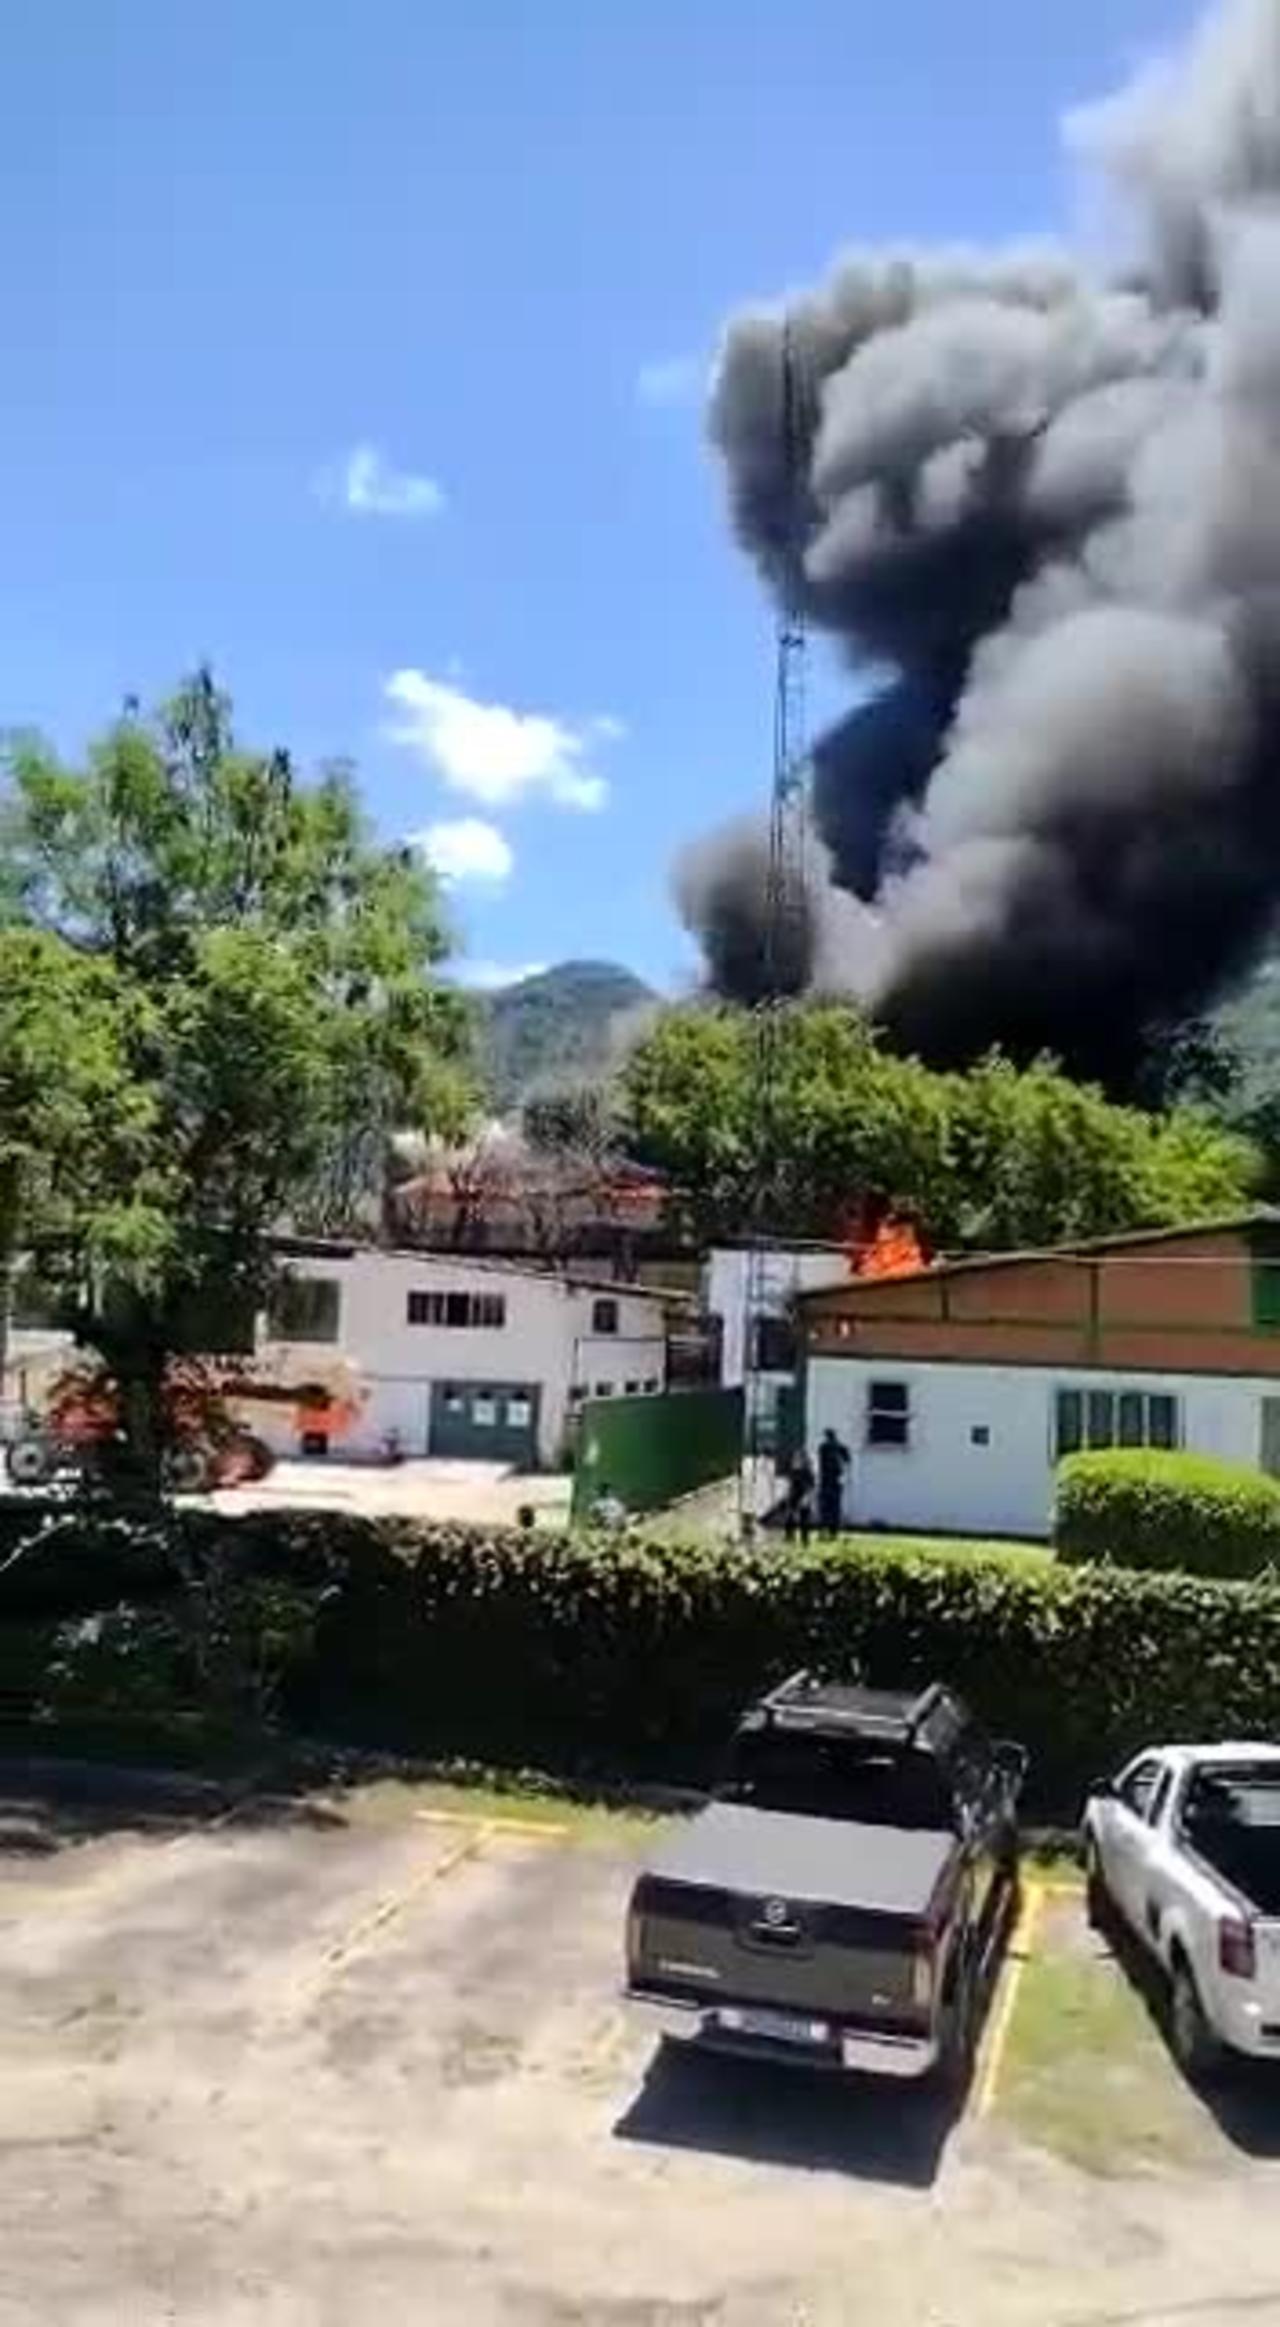 URGENT! Fire at Projac Rede Globo TV Rio de Janeiro 11/18/2022